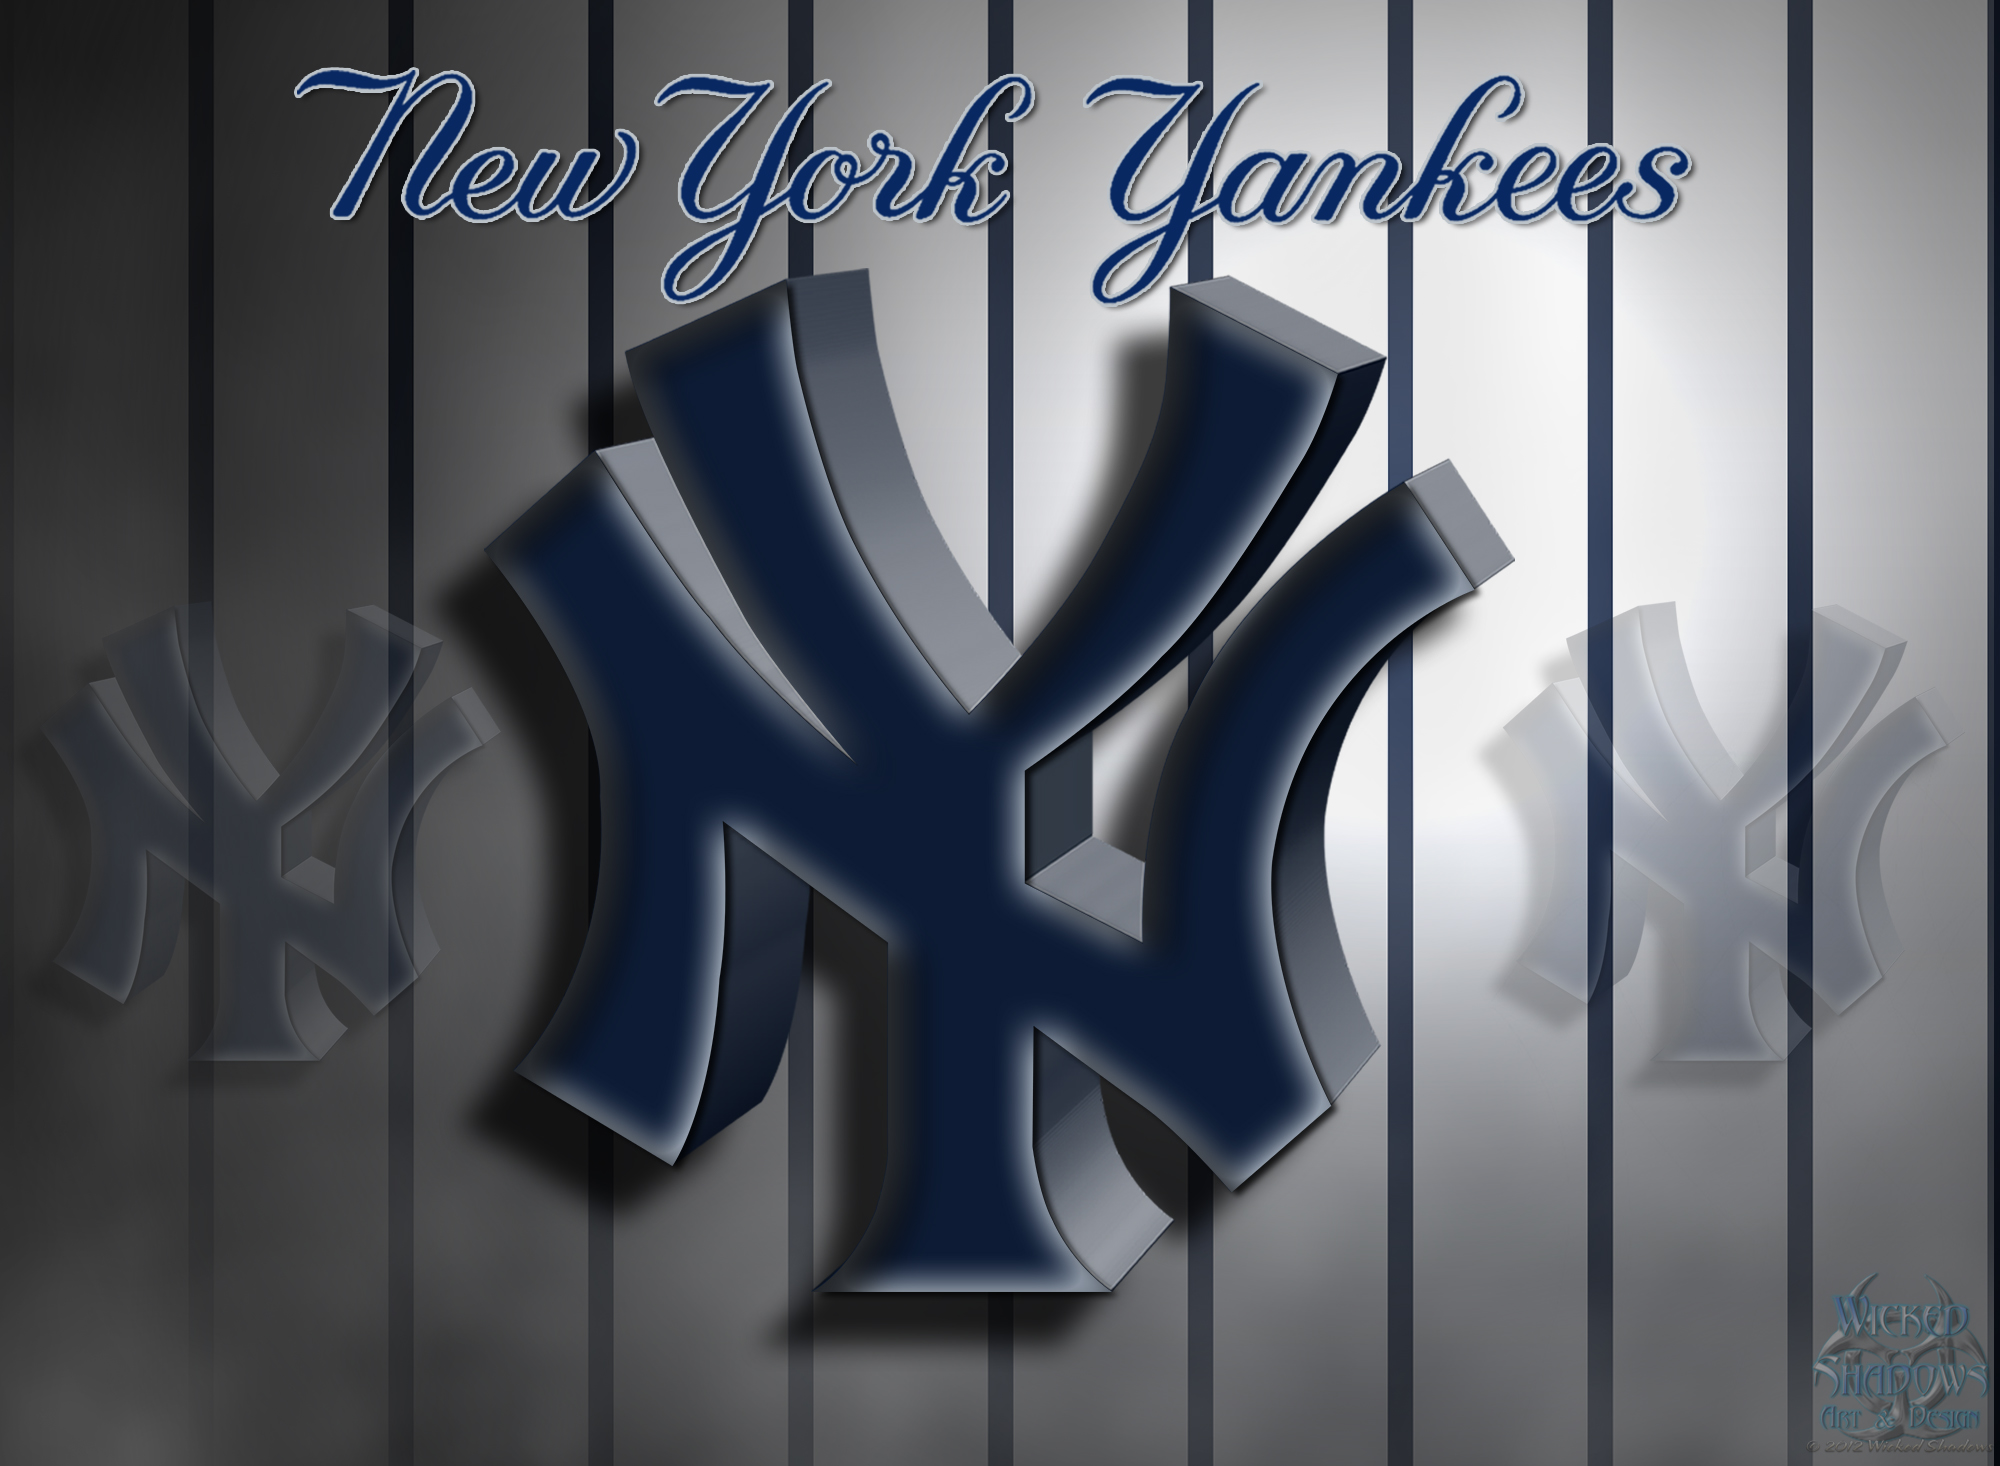 New York Yankees iPhone Wallpaper - WallpaperSafari